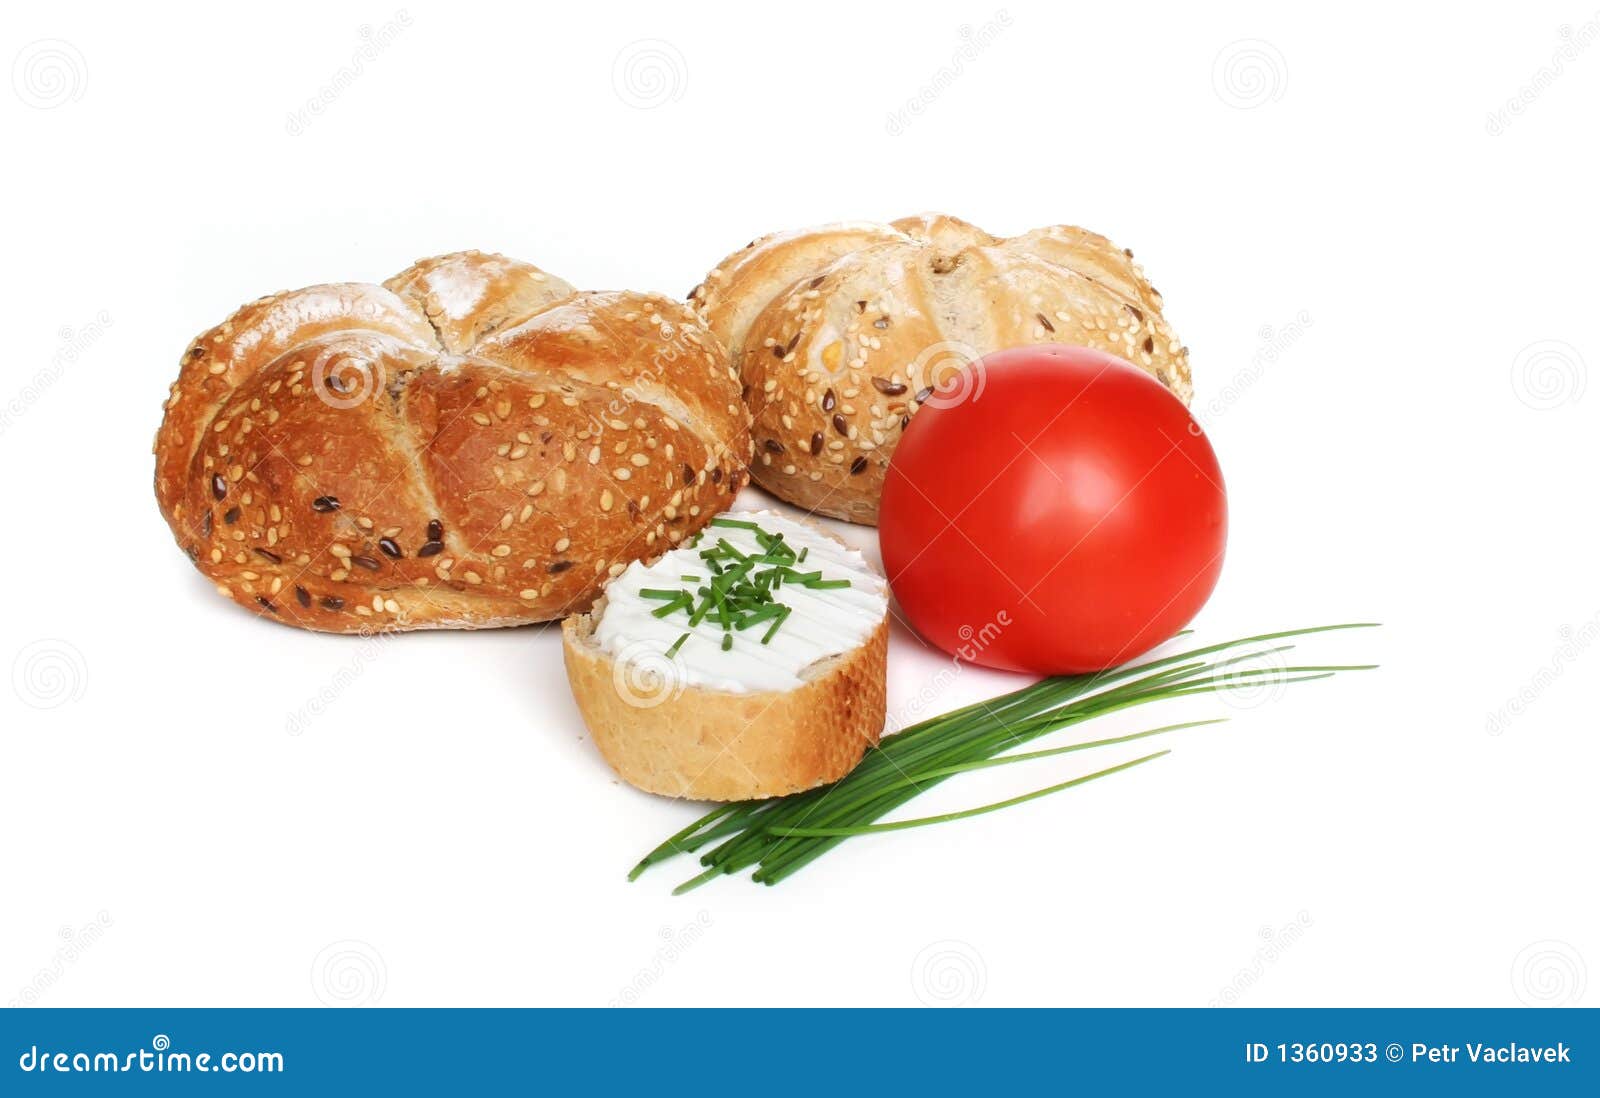 Chleb serowy pomidor zdrowe śniadanie